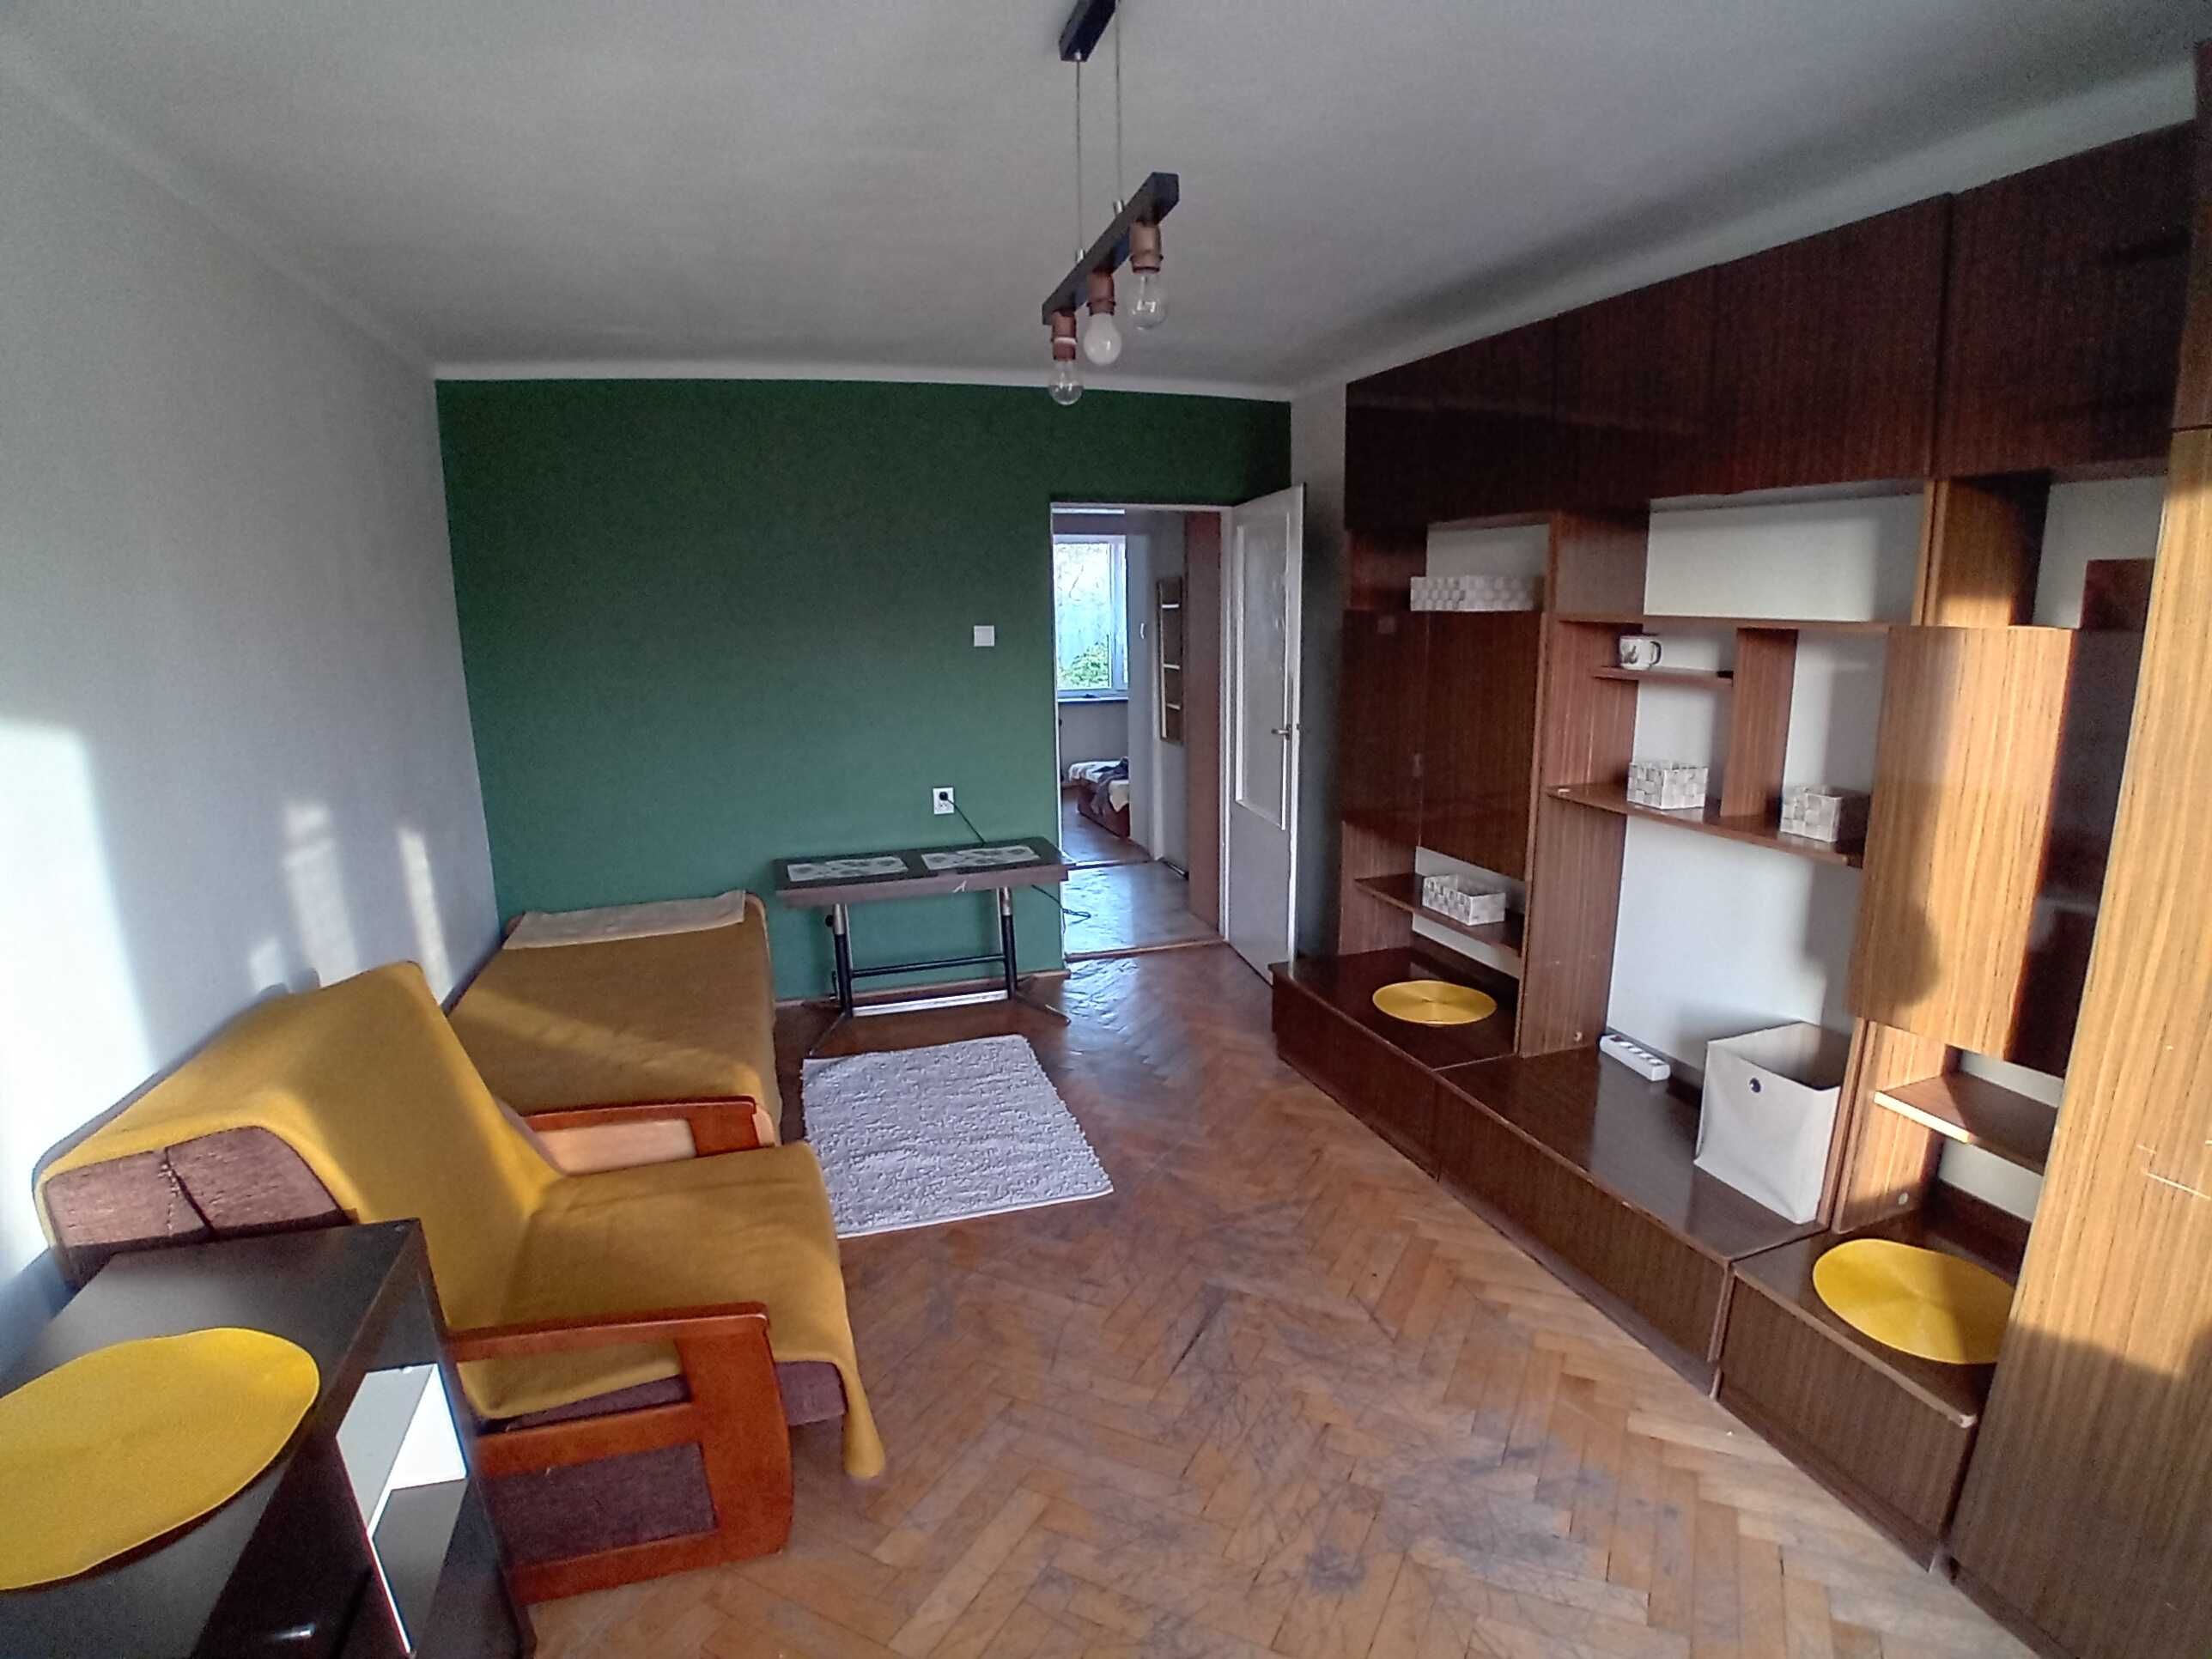 Mieszkanie 43 m2, 2 pokoje, kuchnia ul. Wielicka/Dworzec Płaszów